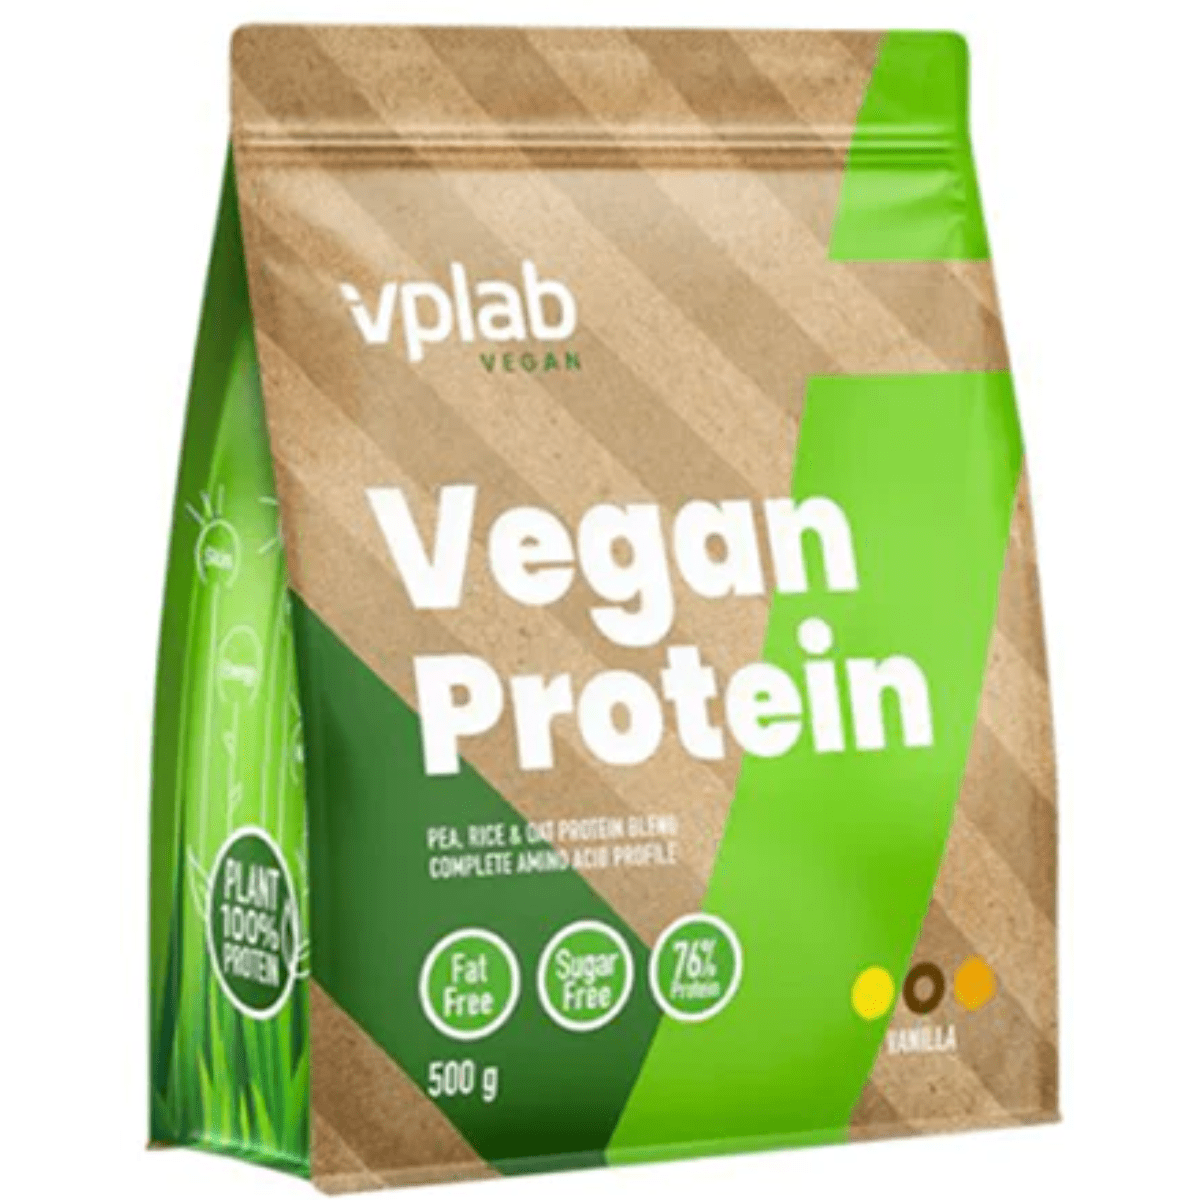 VPLAB Vegan protein 500g